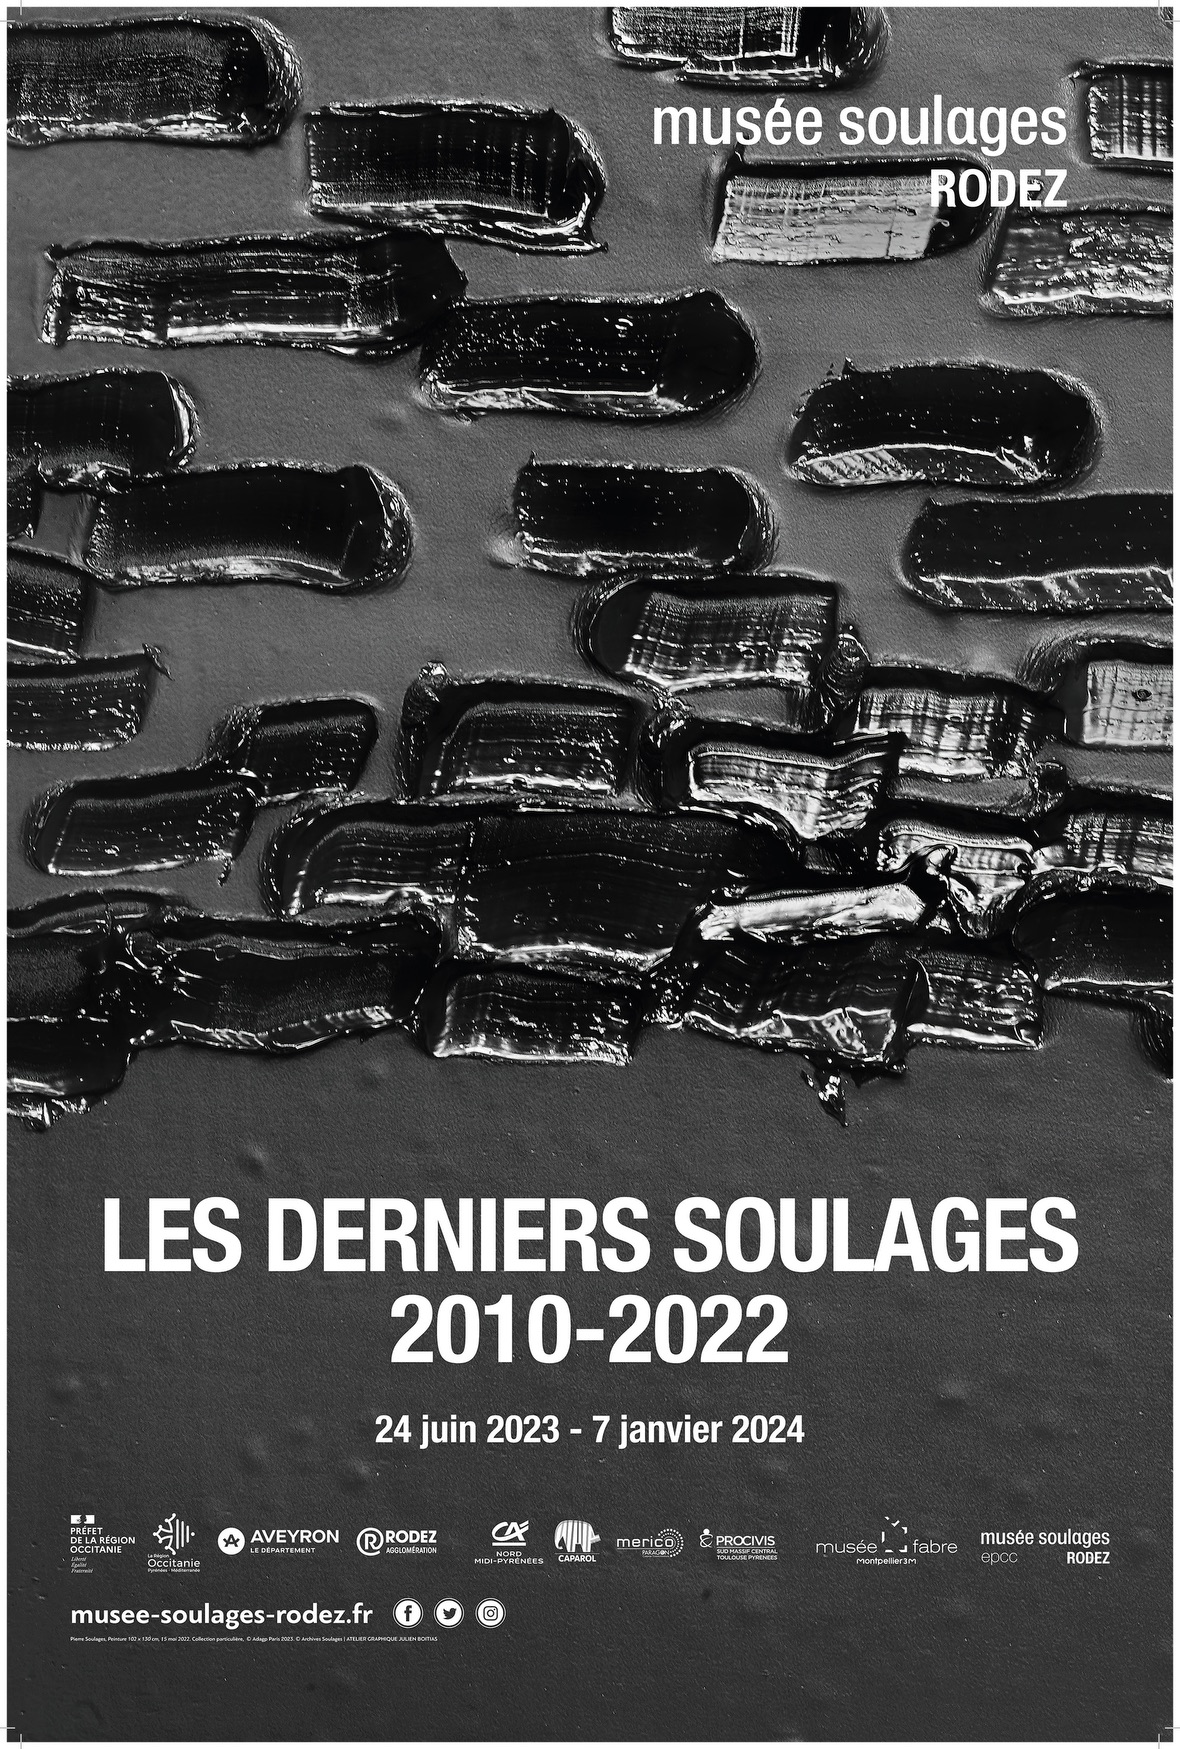 Rodez - LES DERNIERS SOULAGES. 2010-2022  MUSÉE SOULAGES, RODEZ   24 JUIN 2023 - 7 JANVIER 2024